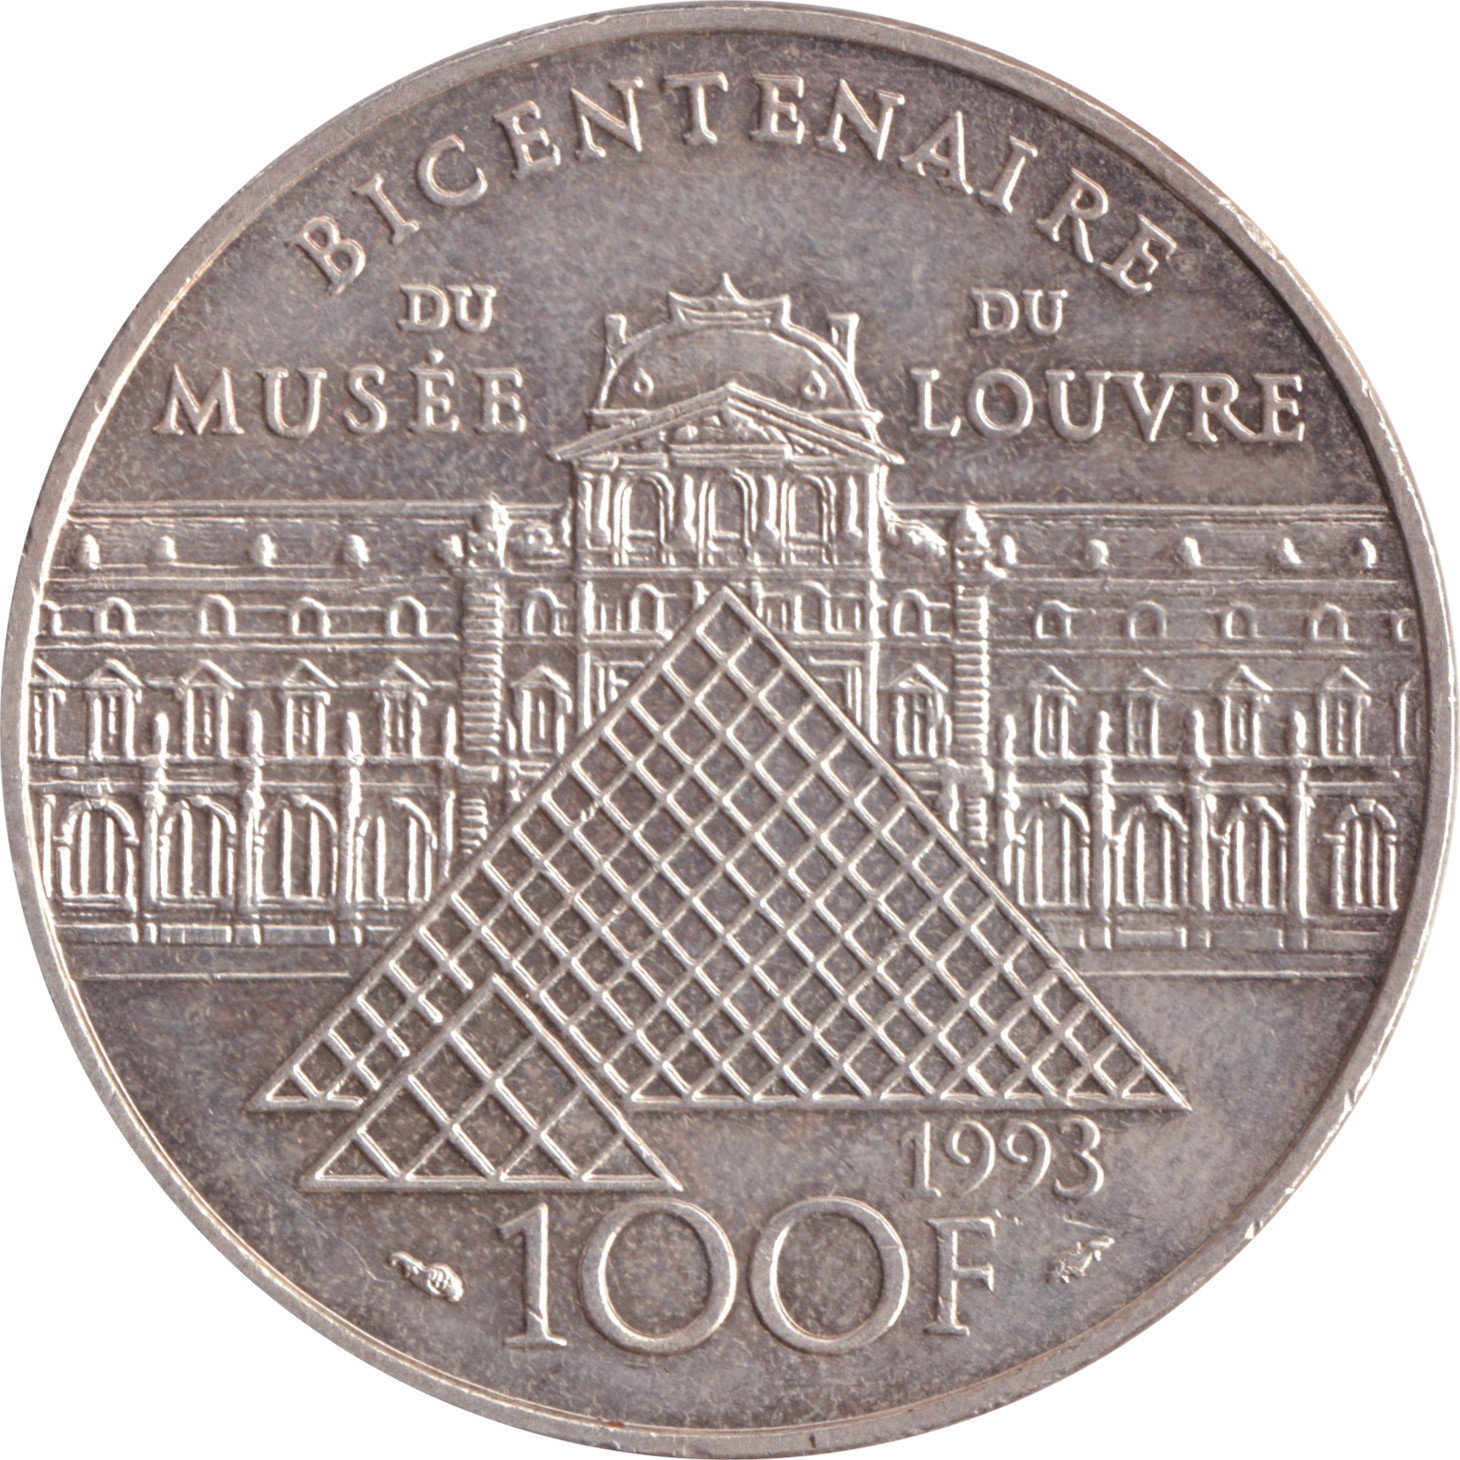 100 francs - Musée du Louvre